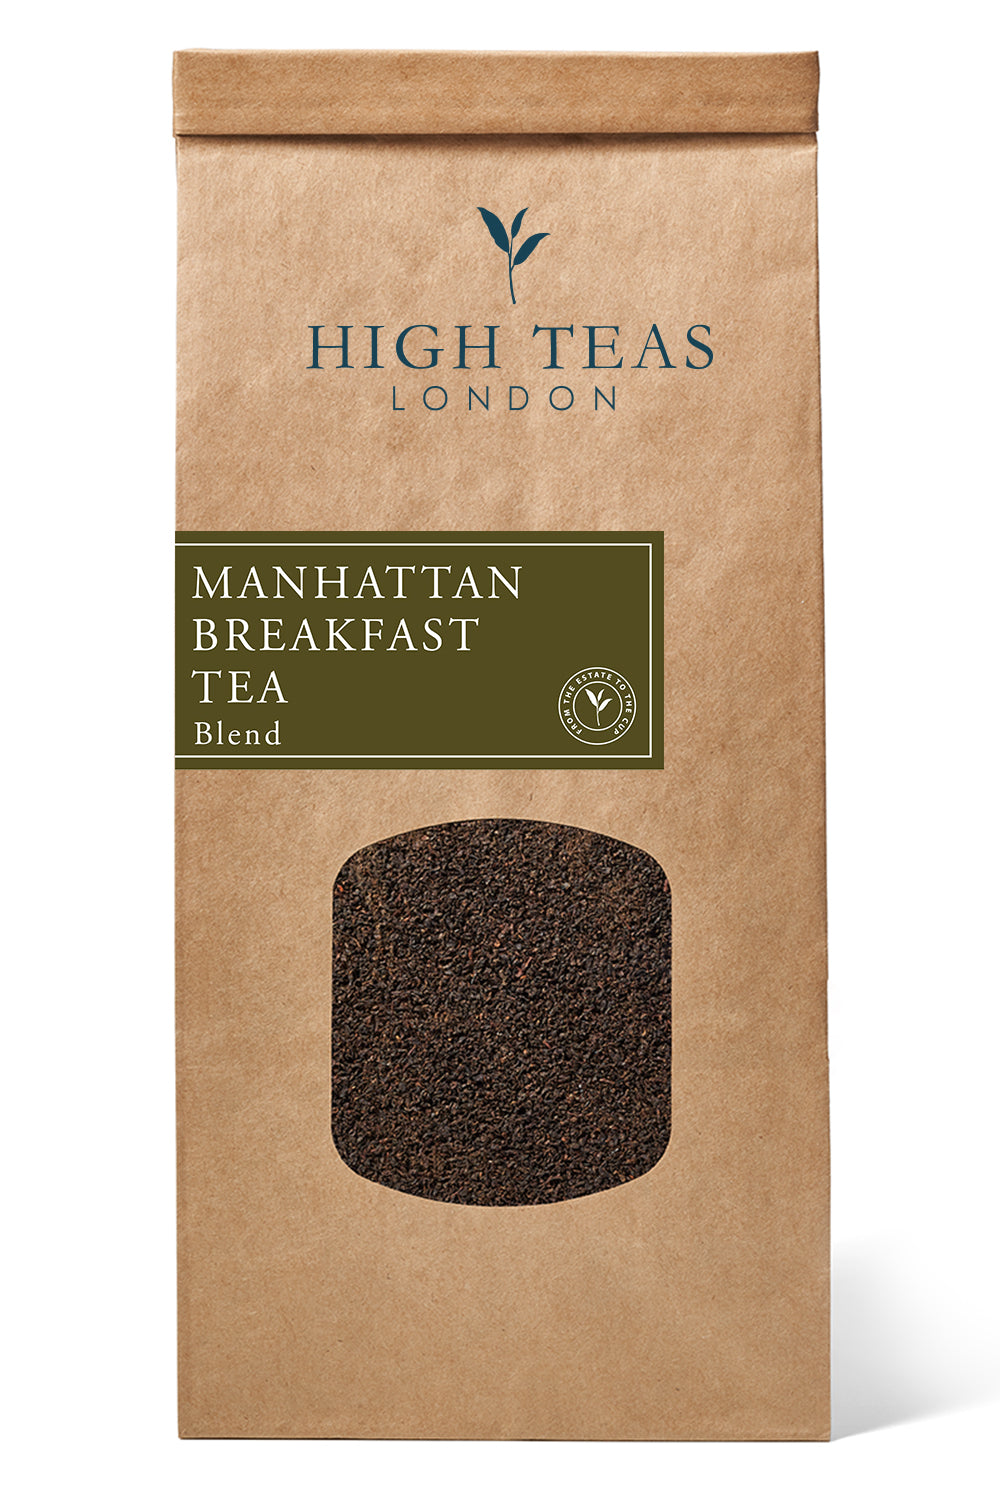 Manhattan Breakfast Tea-250g-Loose Leaf Tea-High Teas